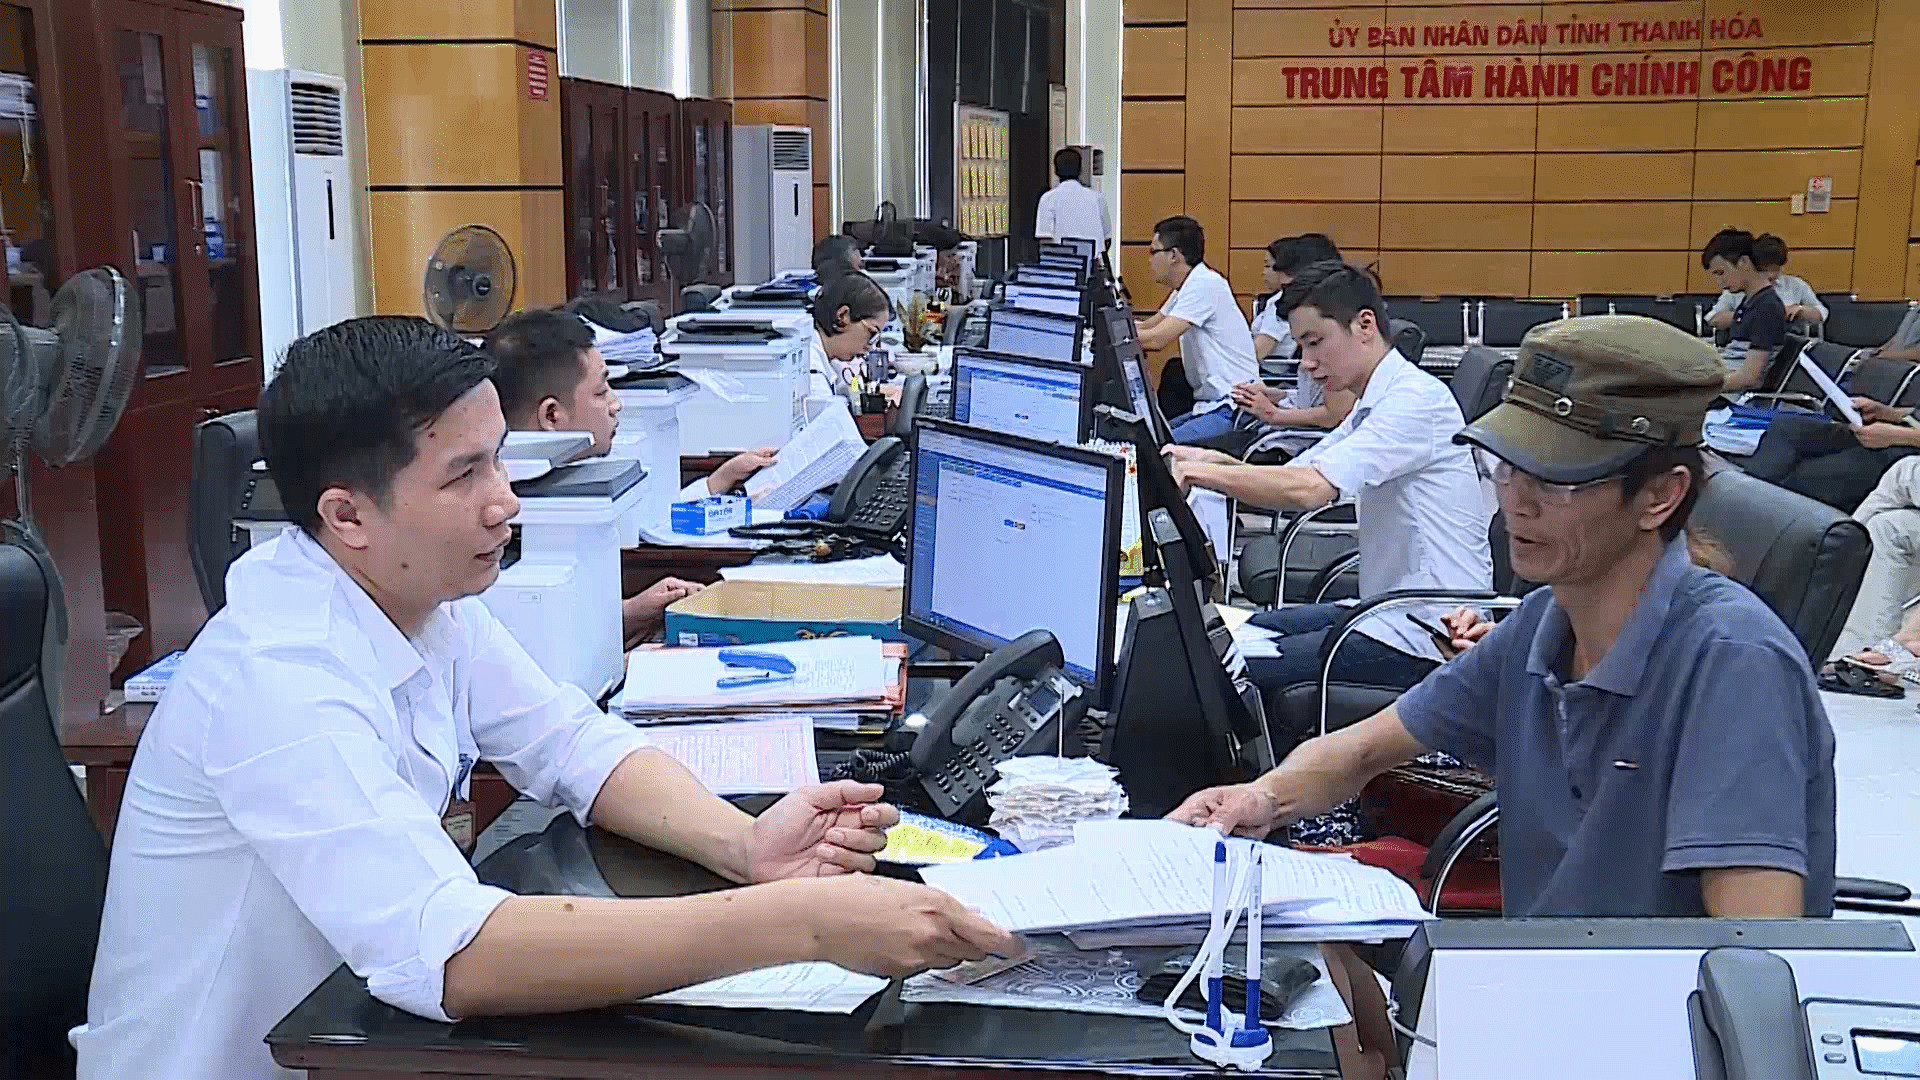 Hiện nay, có tới hơn 93% TTHC được thực hiện tại TTHCC Thanh Hoá.